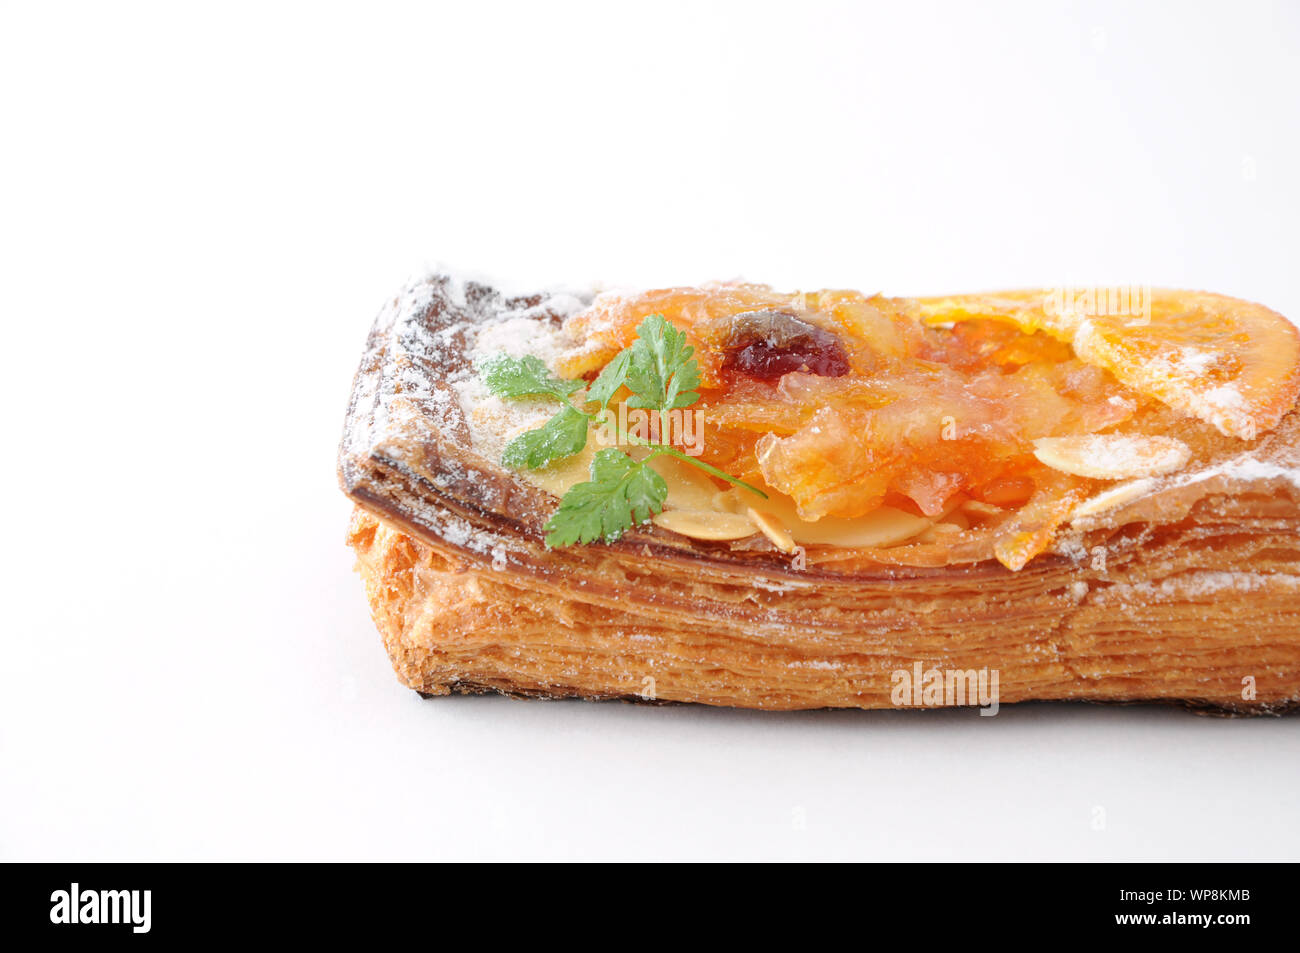 orange marmalade tart pie on white background Stock Photo